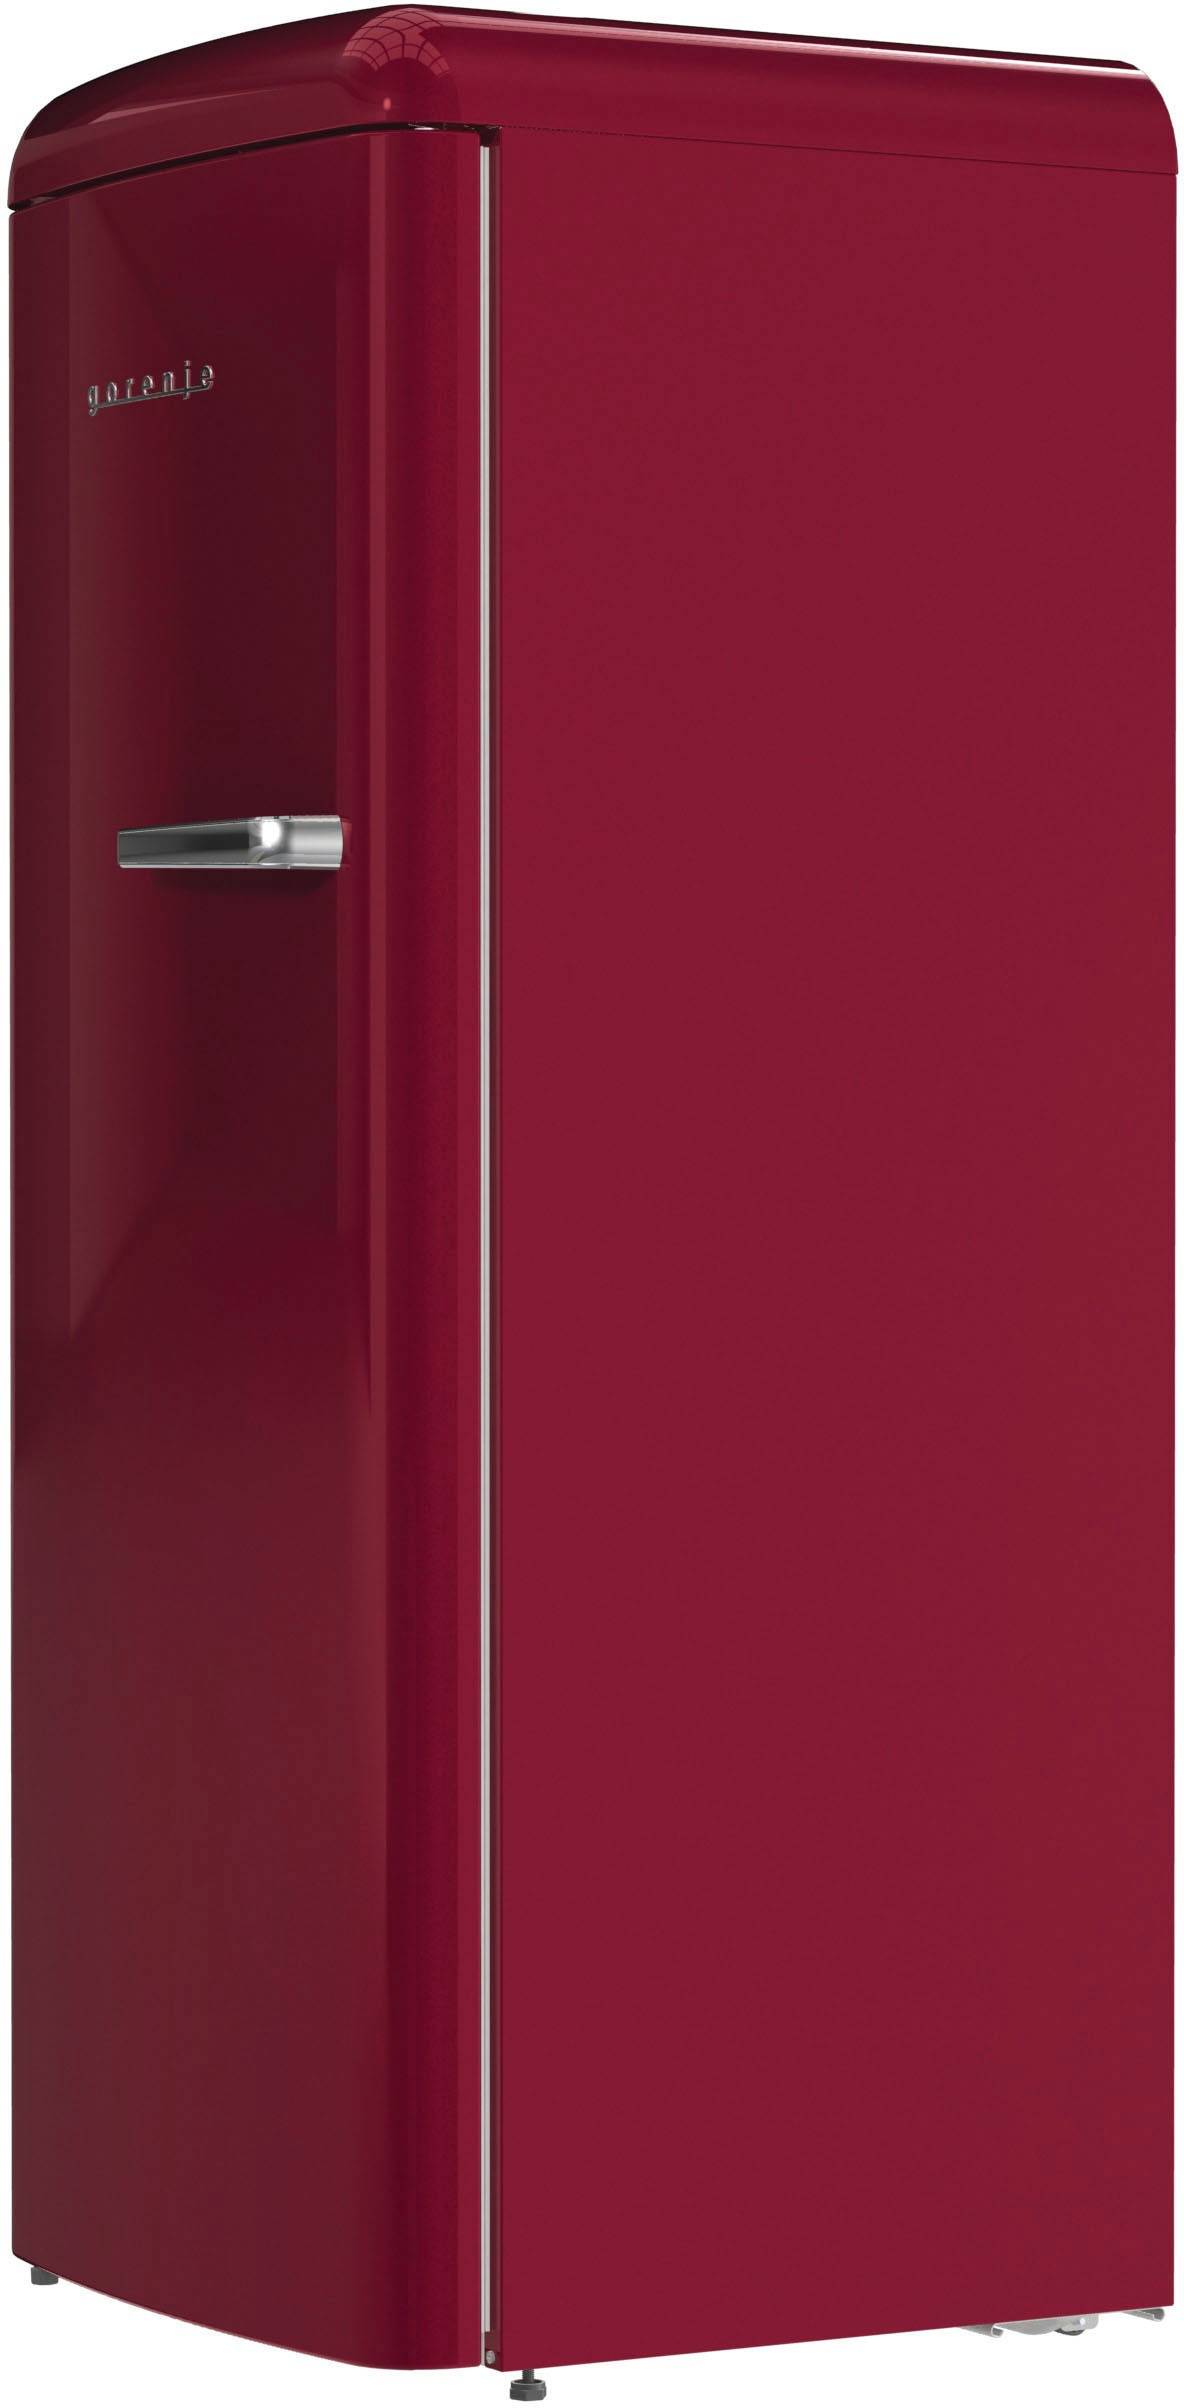 GORENJE Kühlschrank, ORB615DR-L, 59,5 cm cm hoch, breit 152,5 kaufen